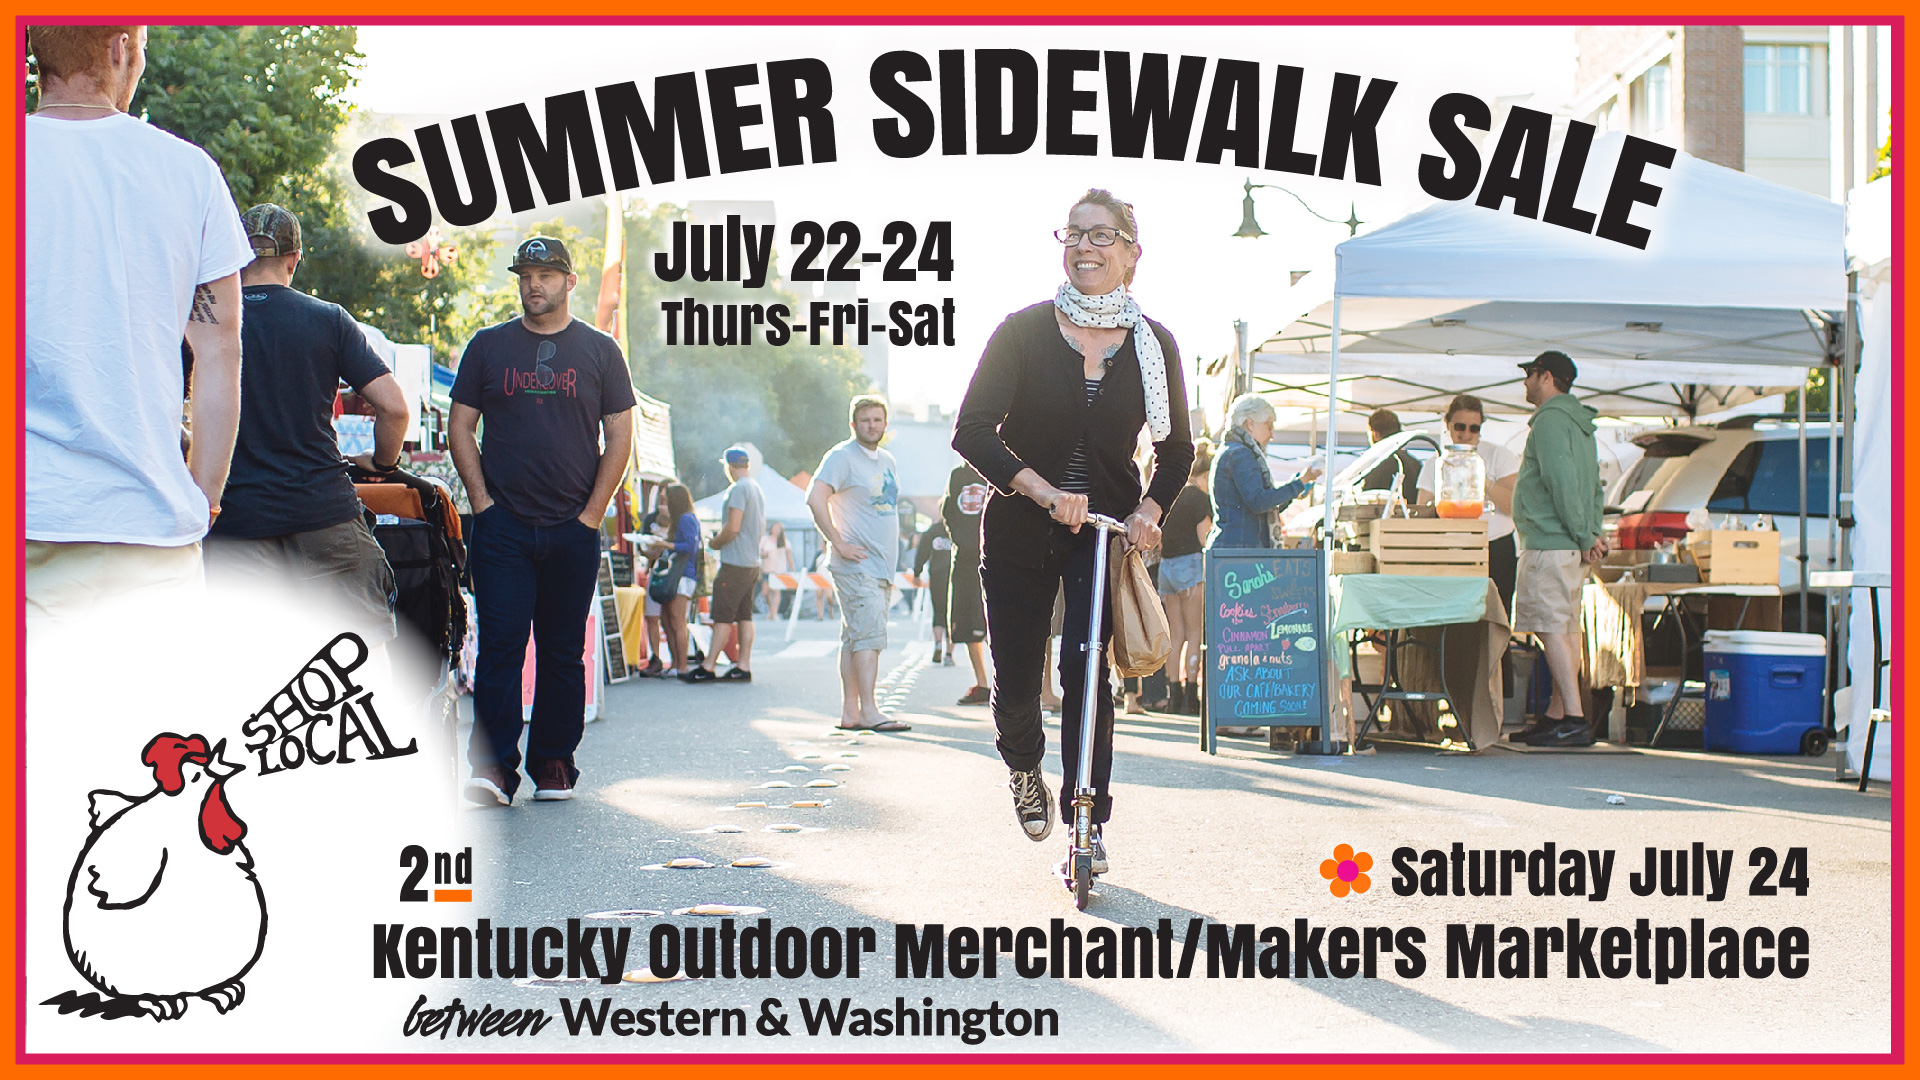 Summer Sidewalk Sale &
 Kentucky St Marketplace
July 2022, Date TBD
